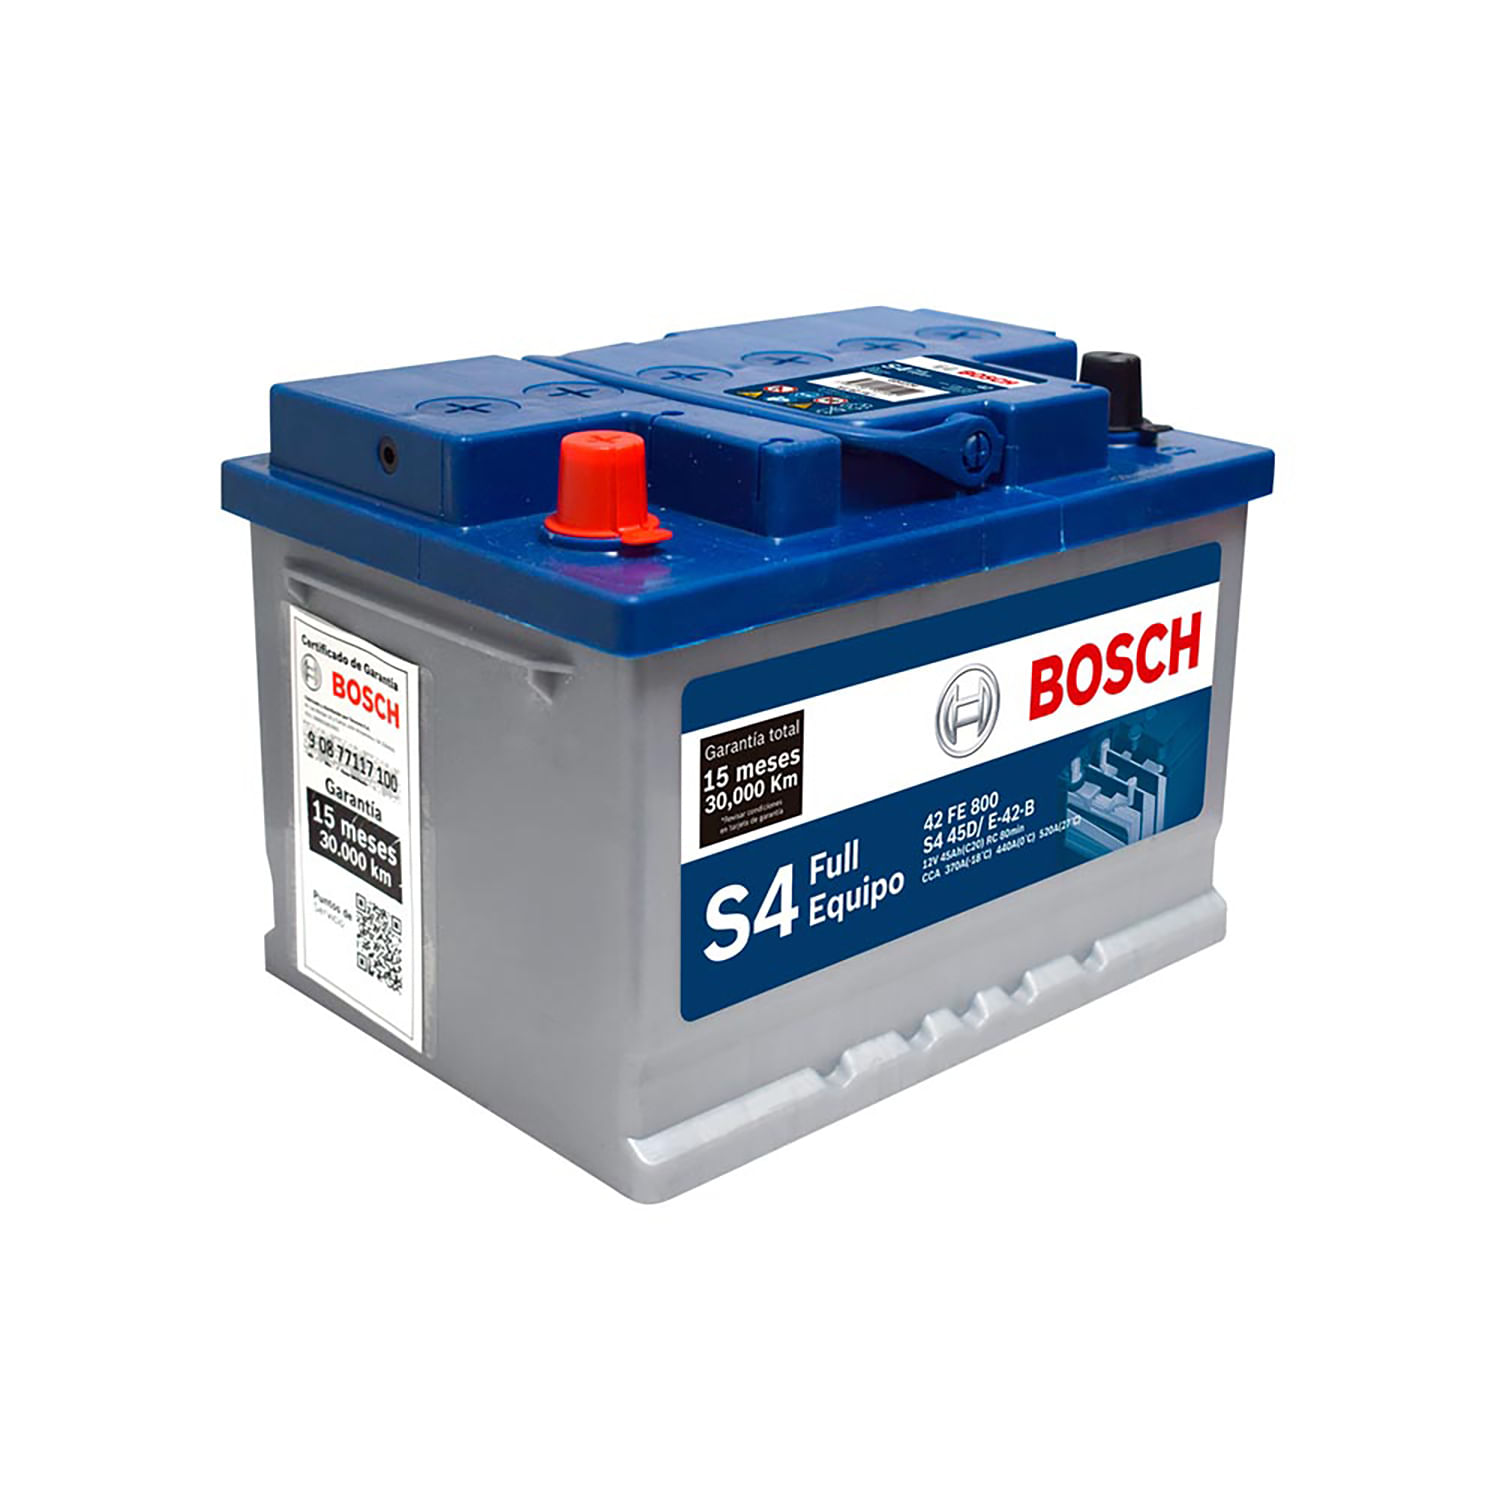 56-506 EMPEX S4 000 Batterie 12V 45Ah 360A B13 L0 Bleiakkumulator